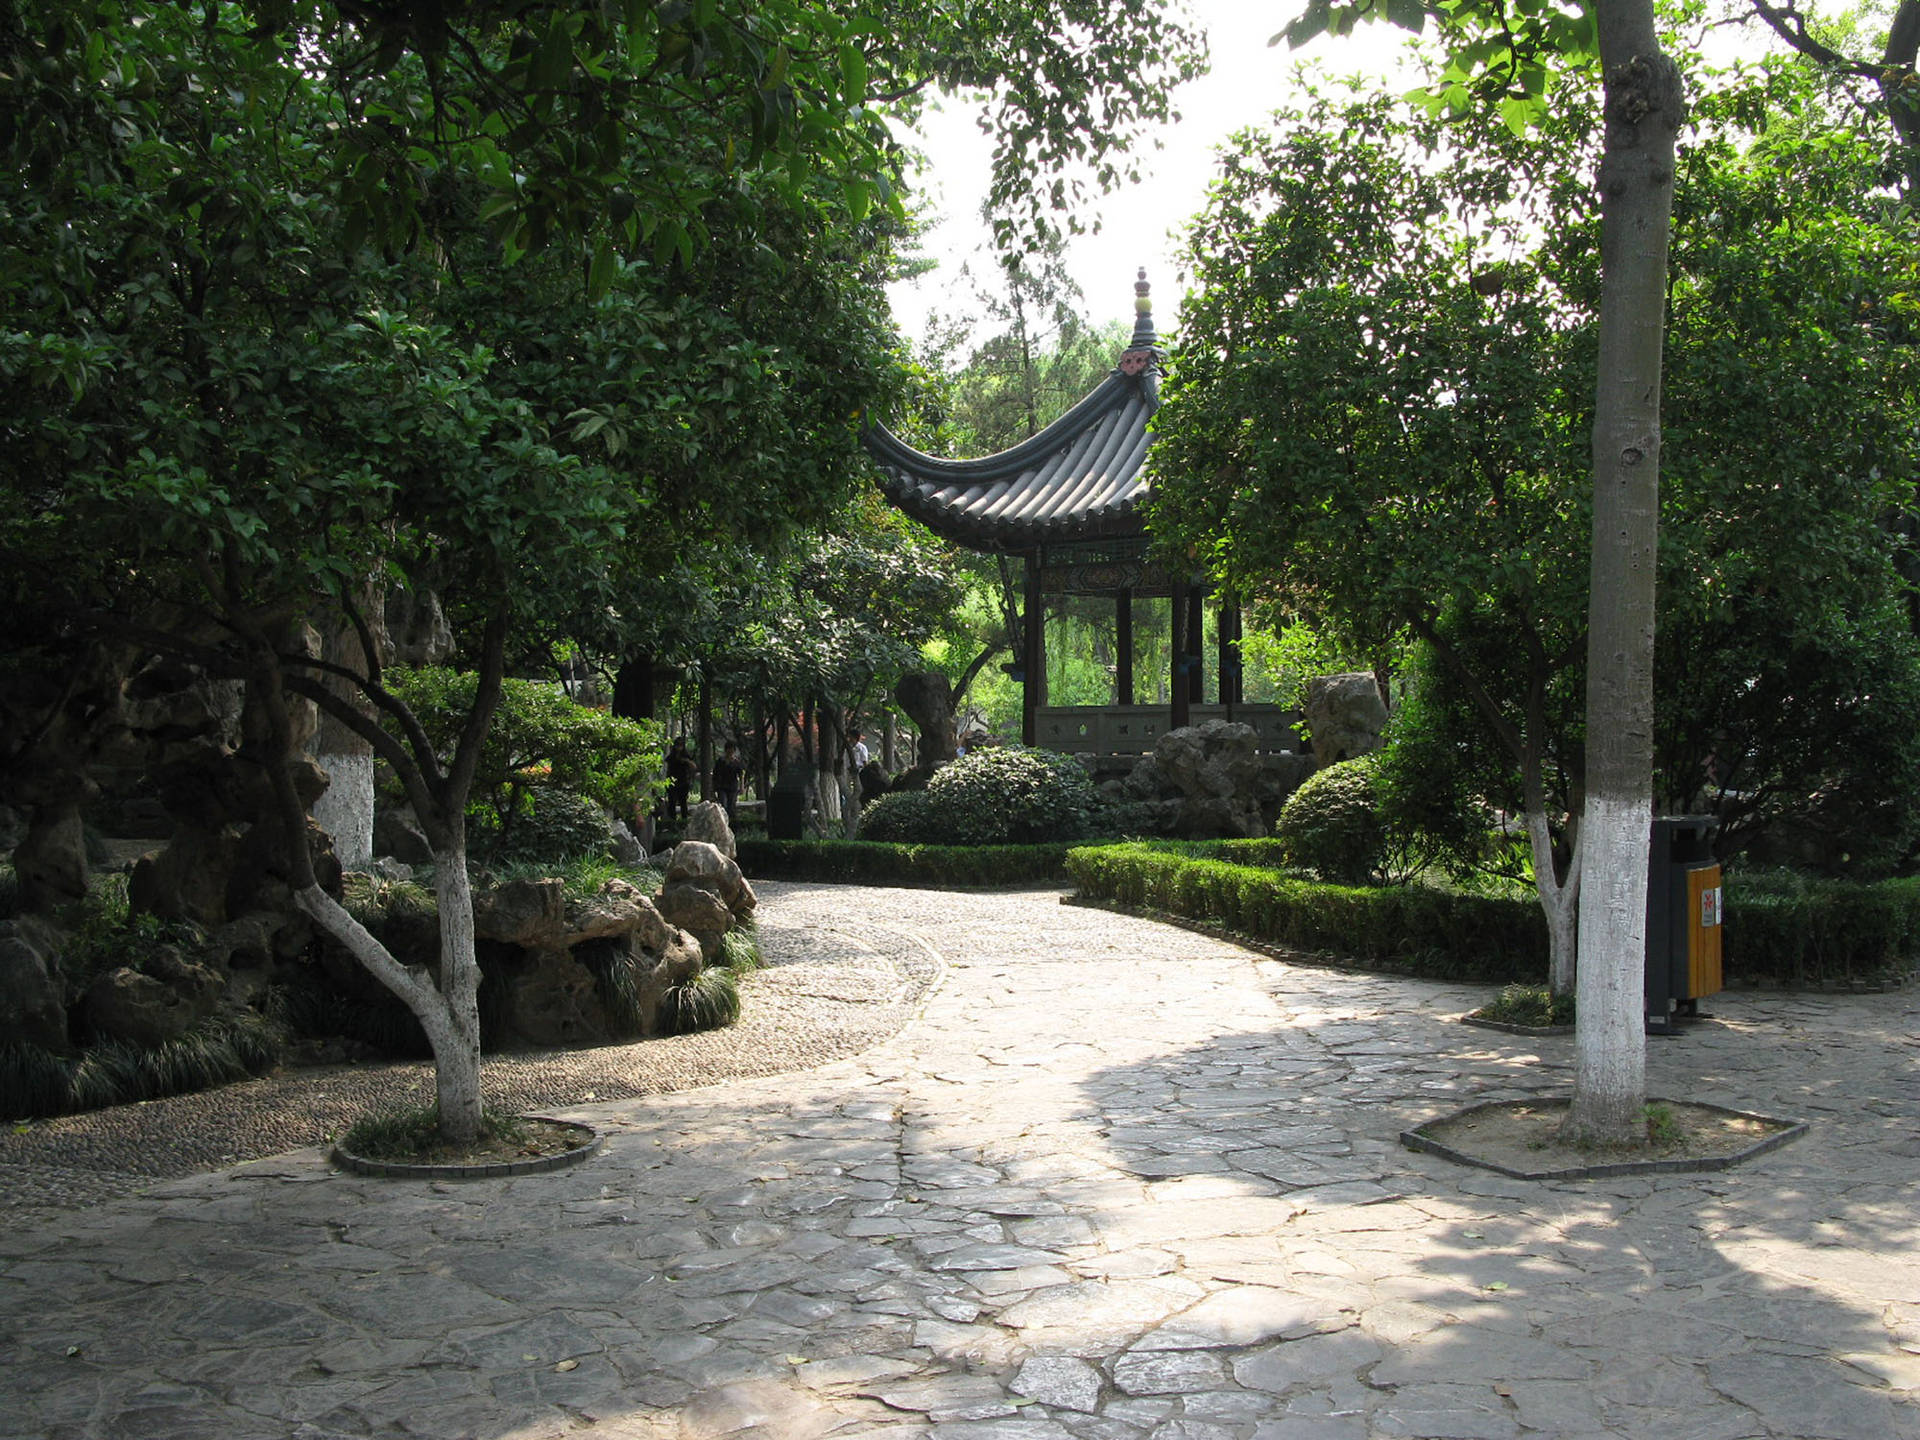 Nanjing Xu Garden